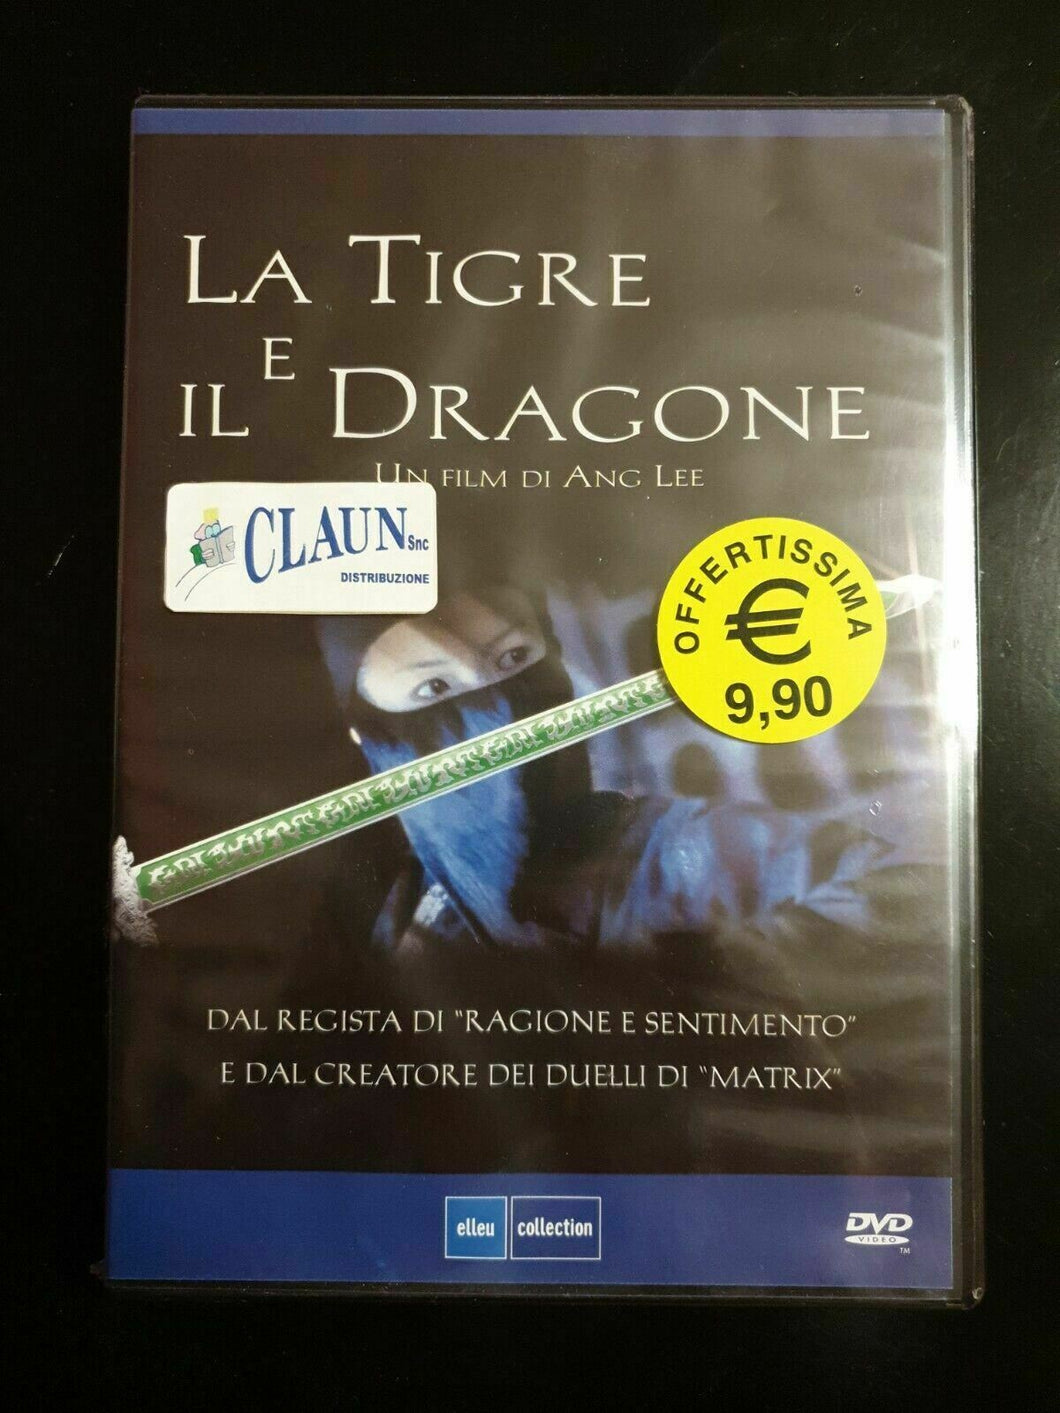 La tigre e il dragone (2000)  Elleu Collection DVD Nuovo